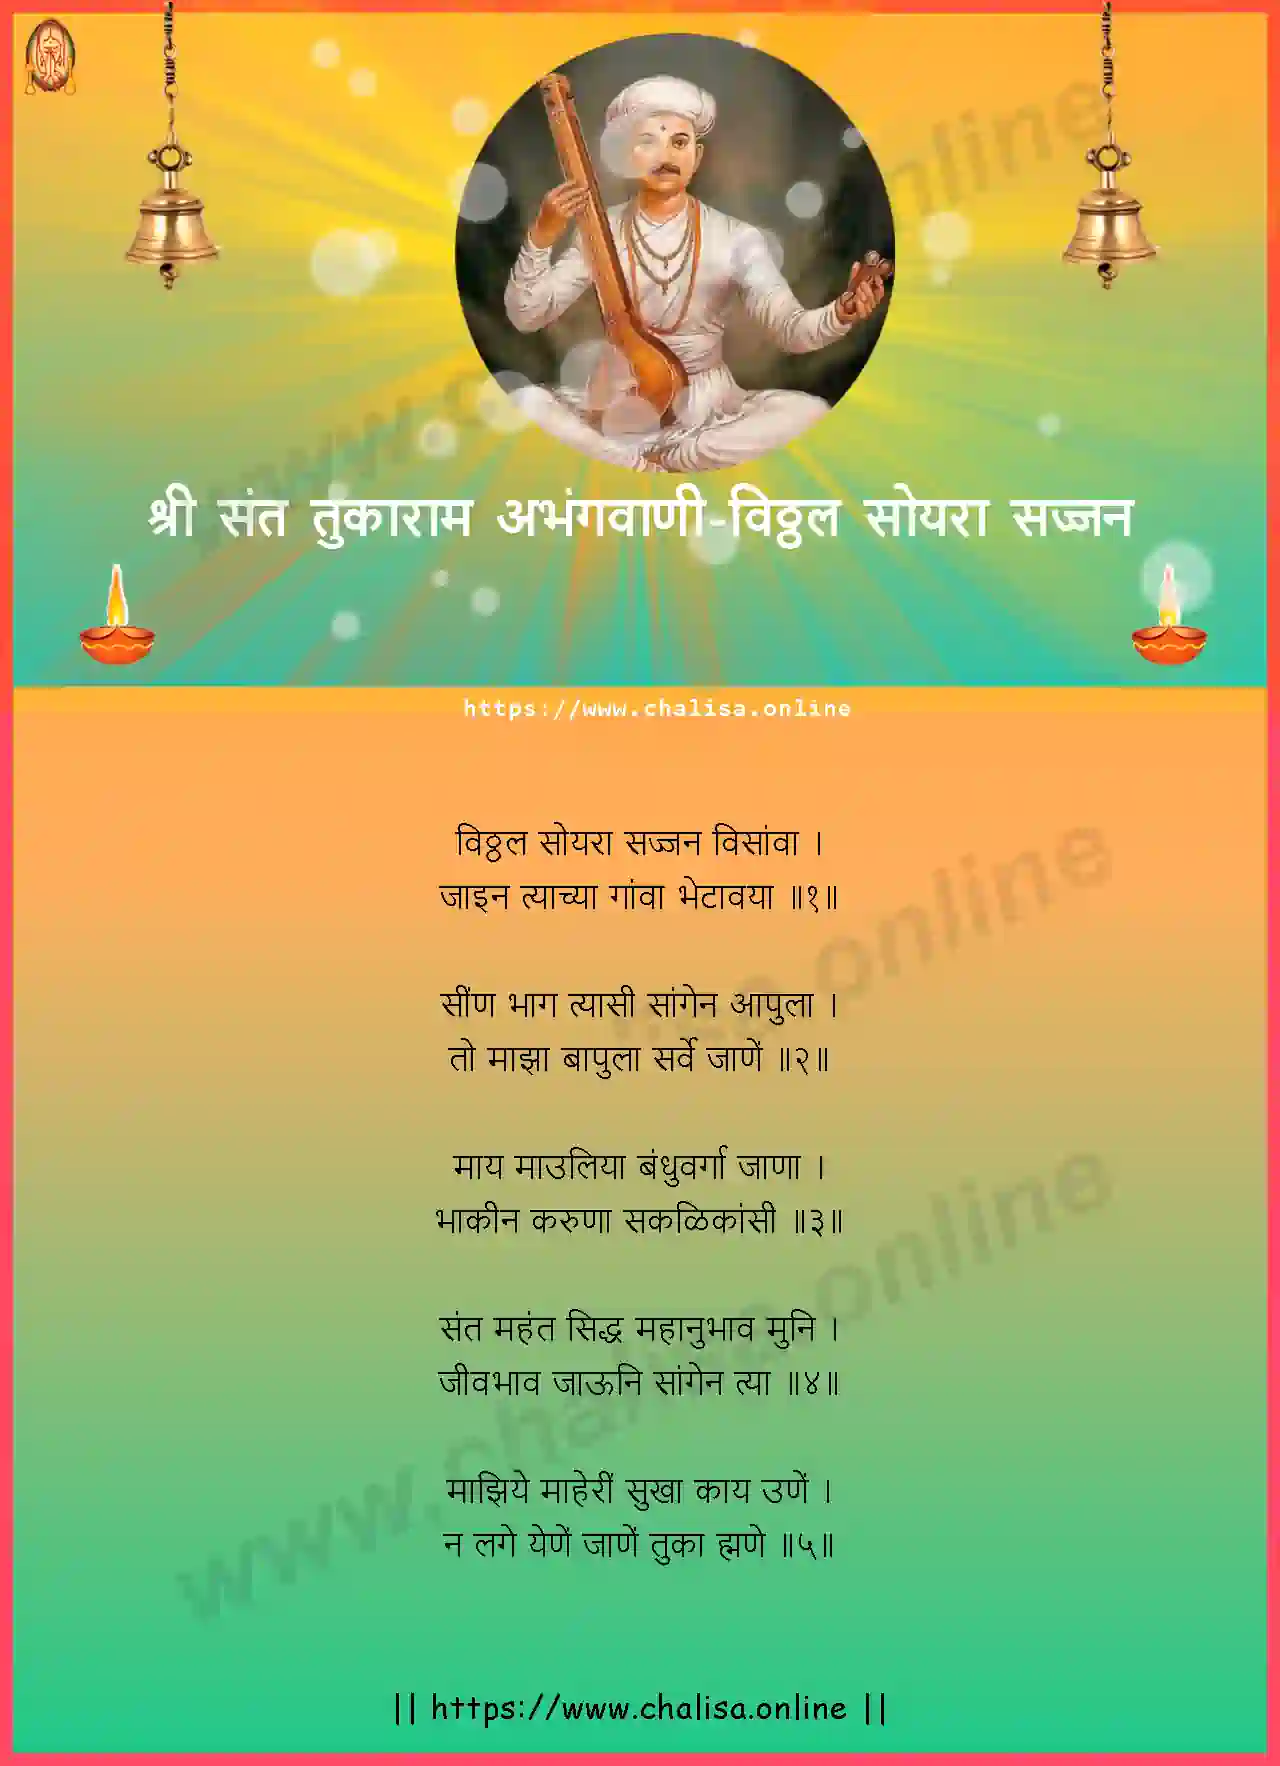 vitthal-soyara-sajjan-shri-sant-tukaram-abhang-marathi-lyrics-download